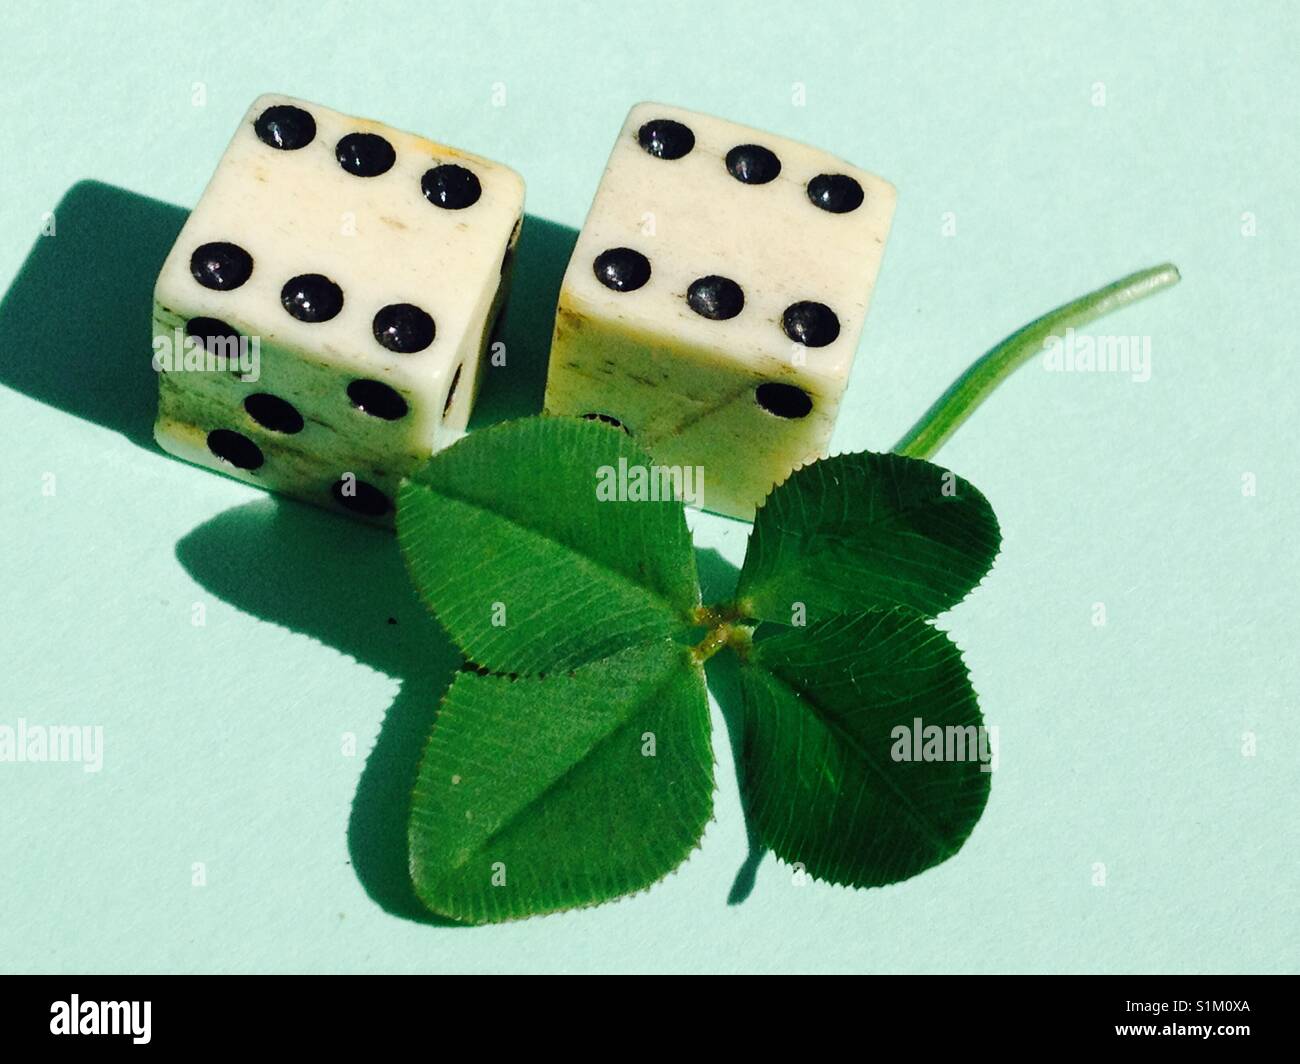 4 foglia di trifoglio e due fortunati 6 / sei die per rappresentare la buona sorte e la fortuna. Foto Stock